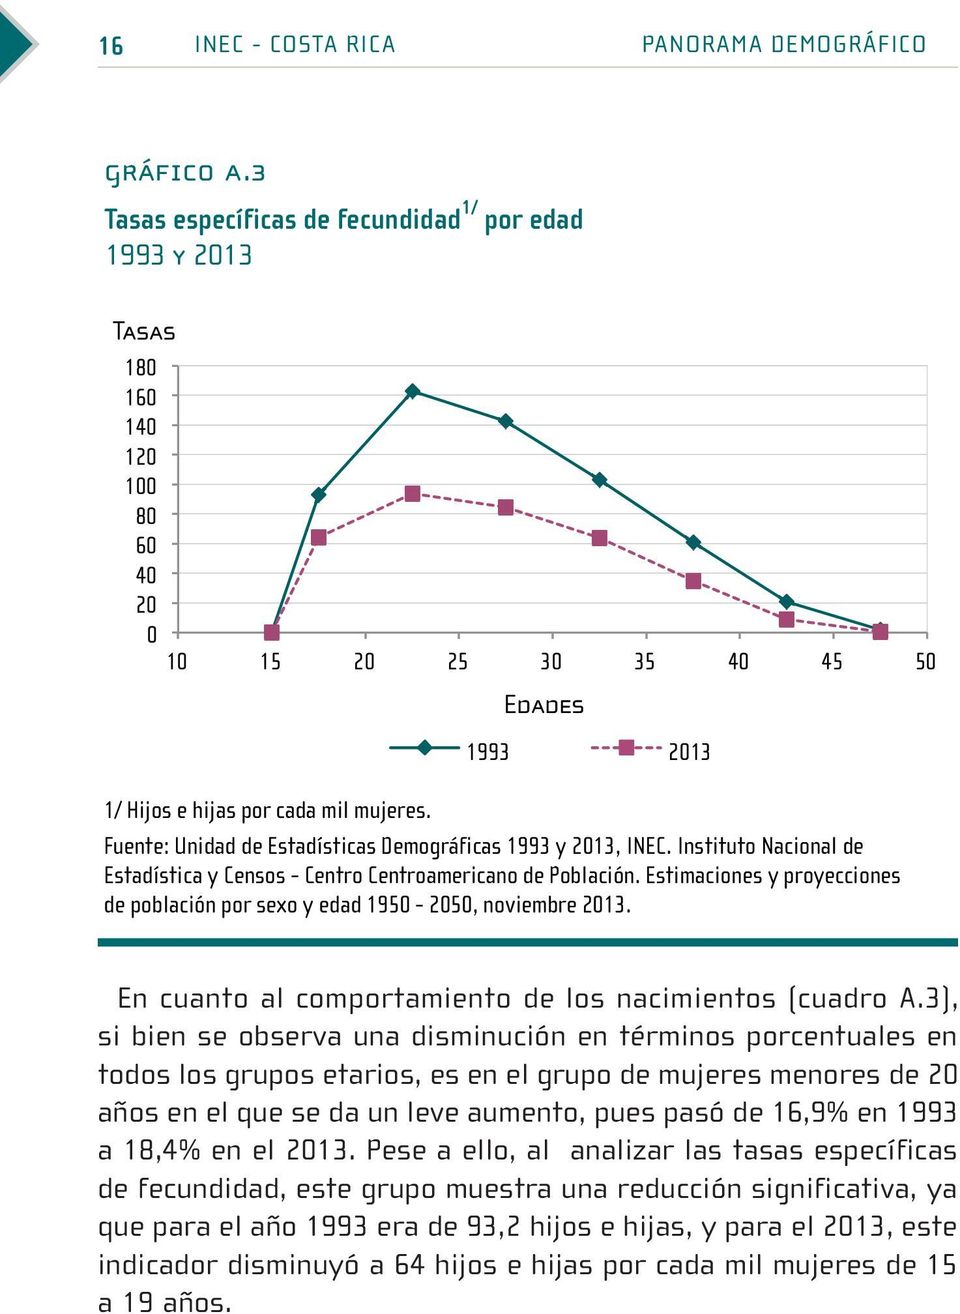 Fuente: Unidad de Estadísticas Demográficas 1993 y 2013, INEC. Instituto Nacional de Estadística y Censos - Centro Centroamericano de Población.